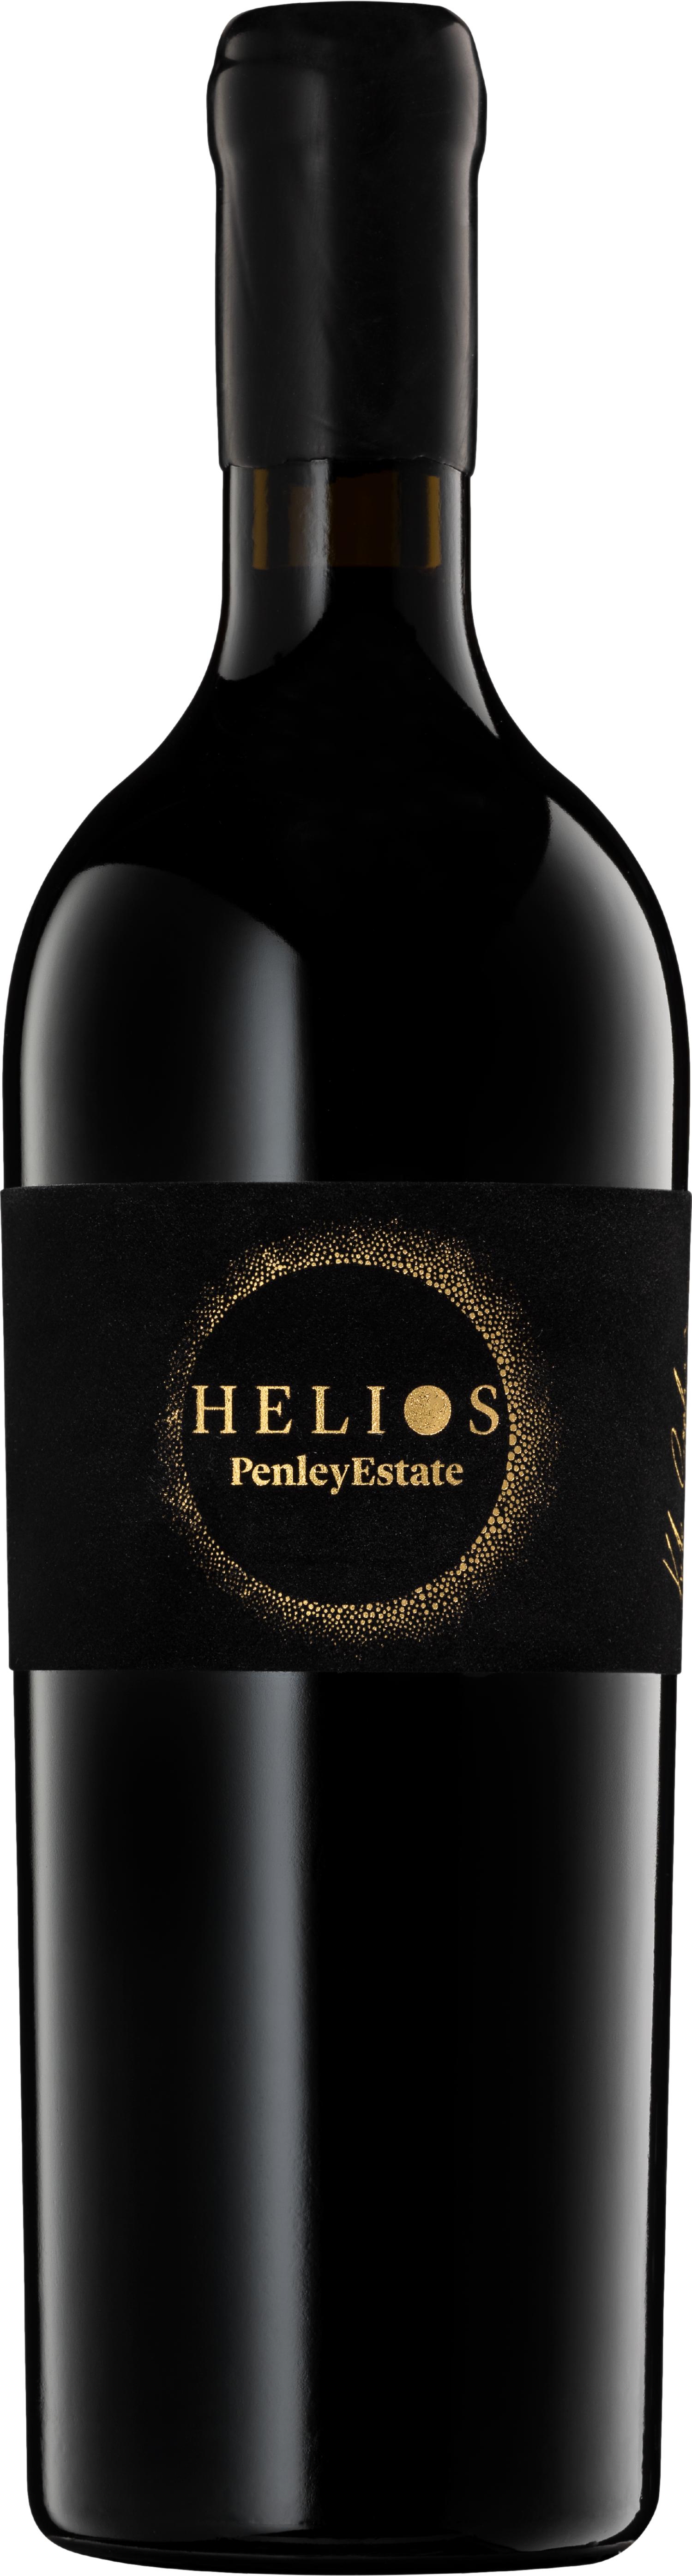 2018 1 günstig Kaufen-Penley Estate Helios Cabernet Sauvignon 2018. Penley Estate Helios Cabernet Sauvignon 2018 . 